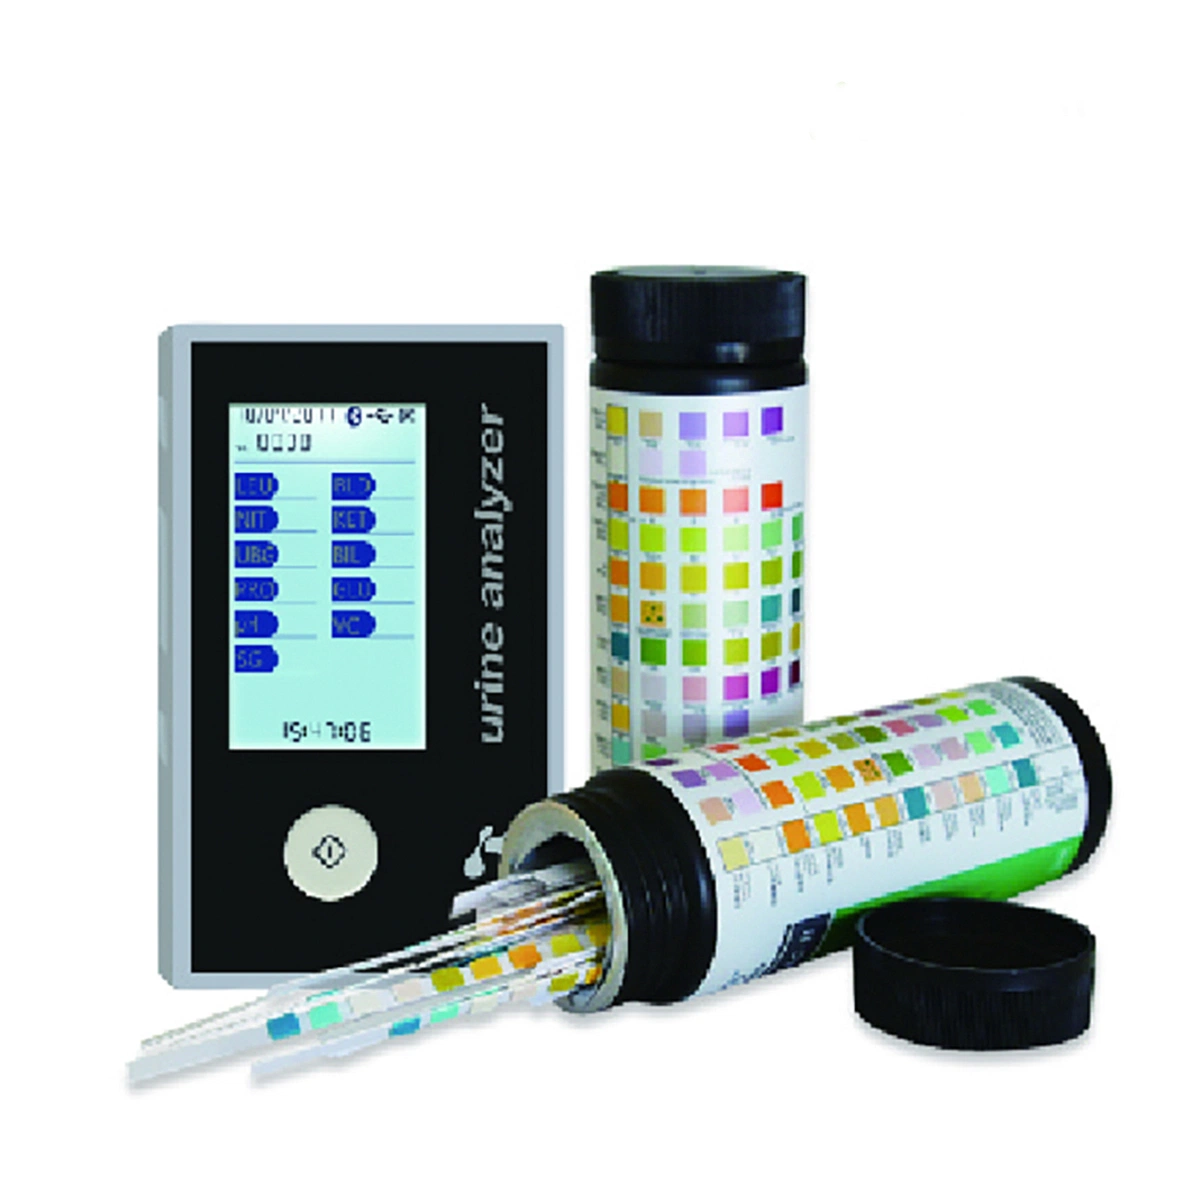 Aprovado pela CE 11 parâmetros de urina médicos profissionais com o analisador de espectro de espalhamento para uso Hopsital01-7 da HCU